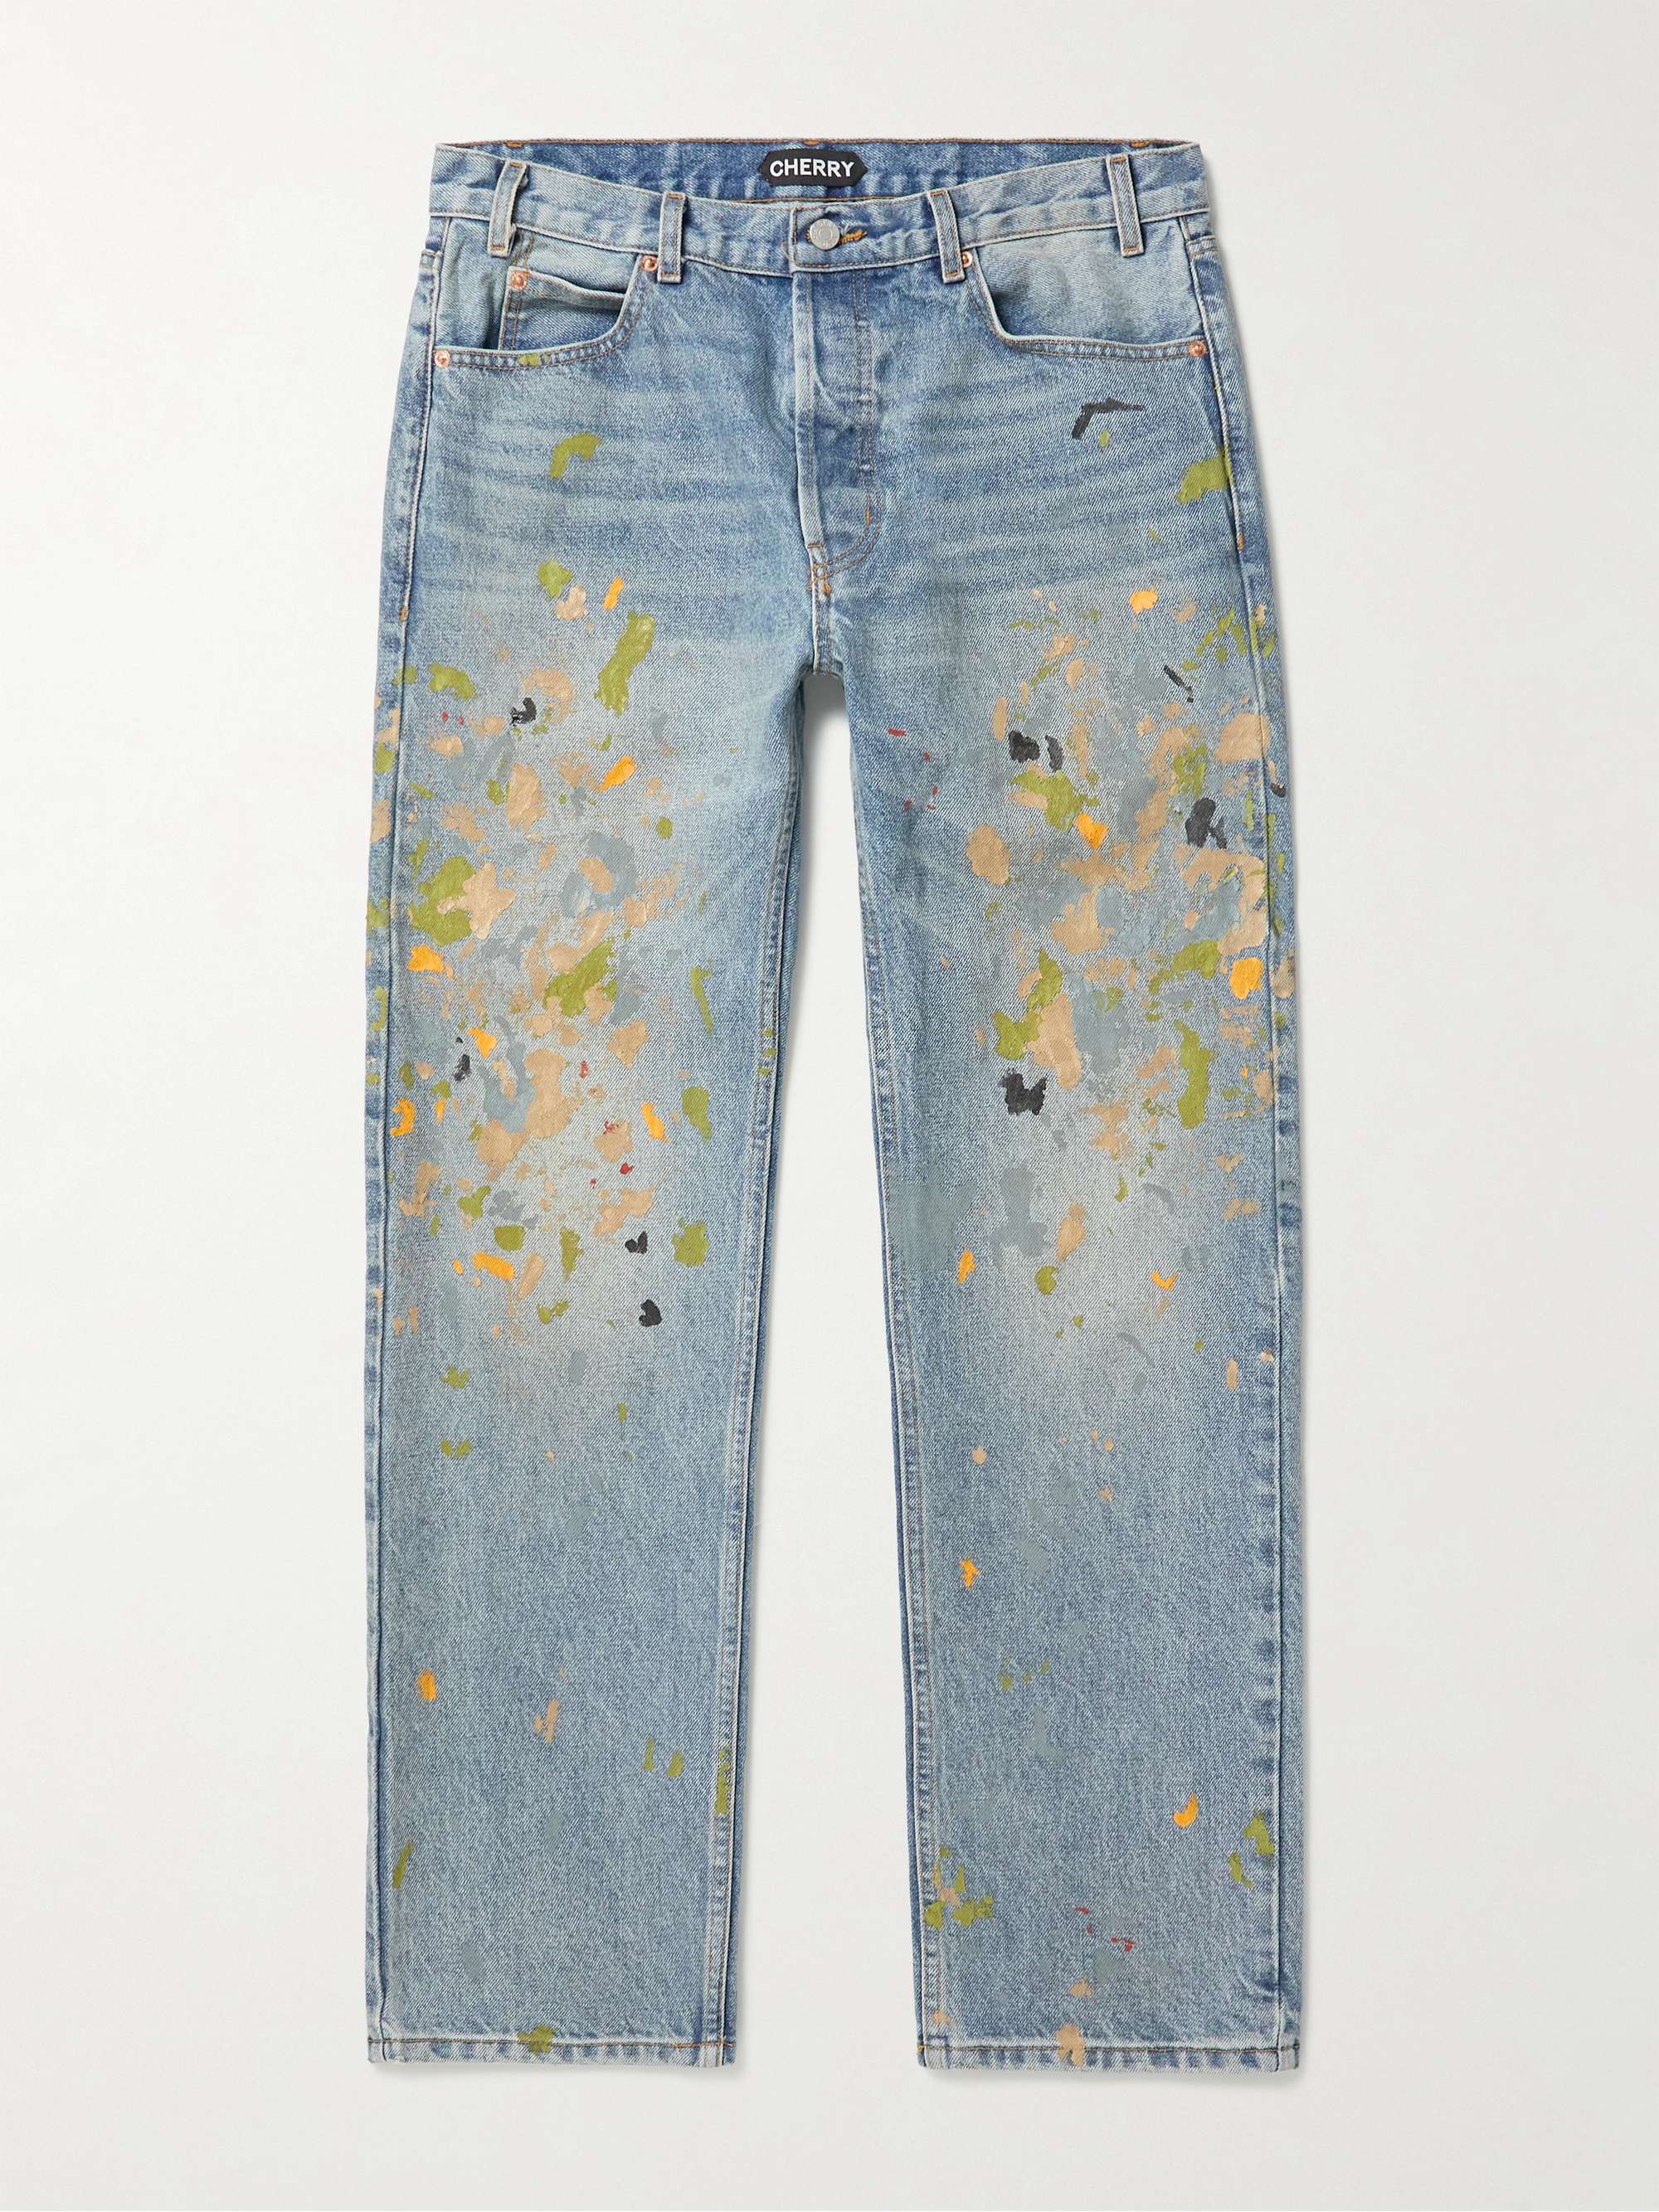 Light denim Paint-Splattered Straight-Leg Jeans | CHERRY LA | MR PORTER